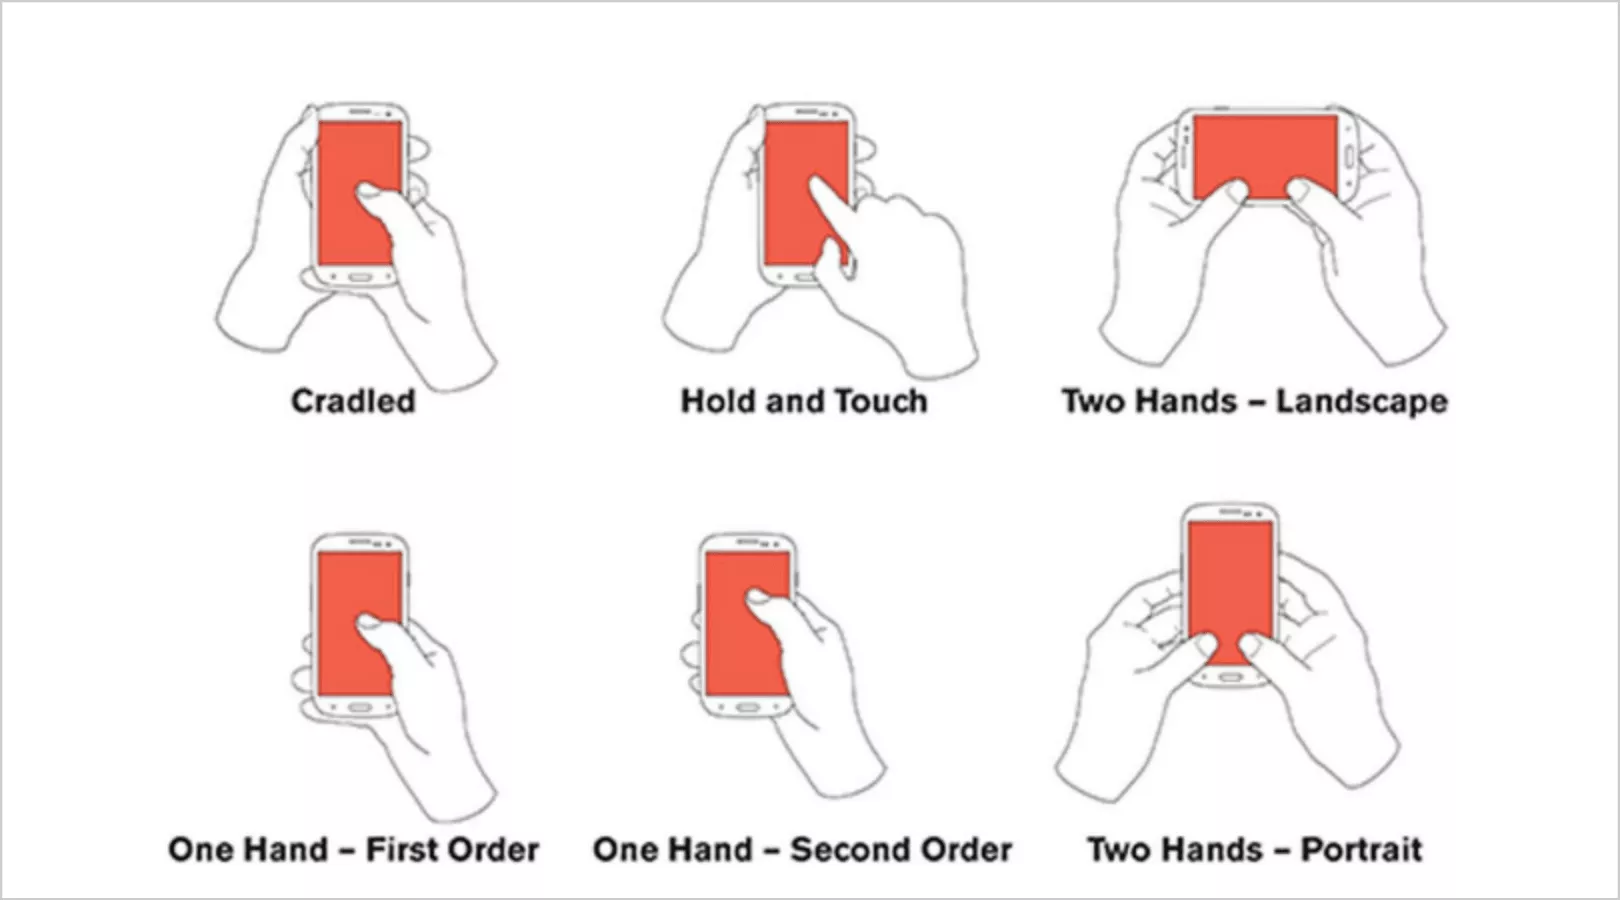 w rzeczywistości istnieje sześć sposobów trzymania telefonów przez użytkowników